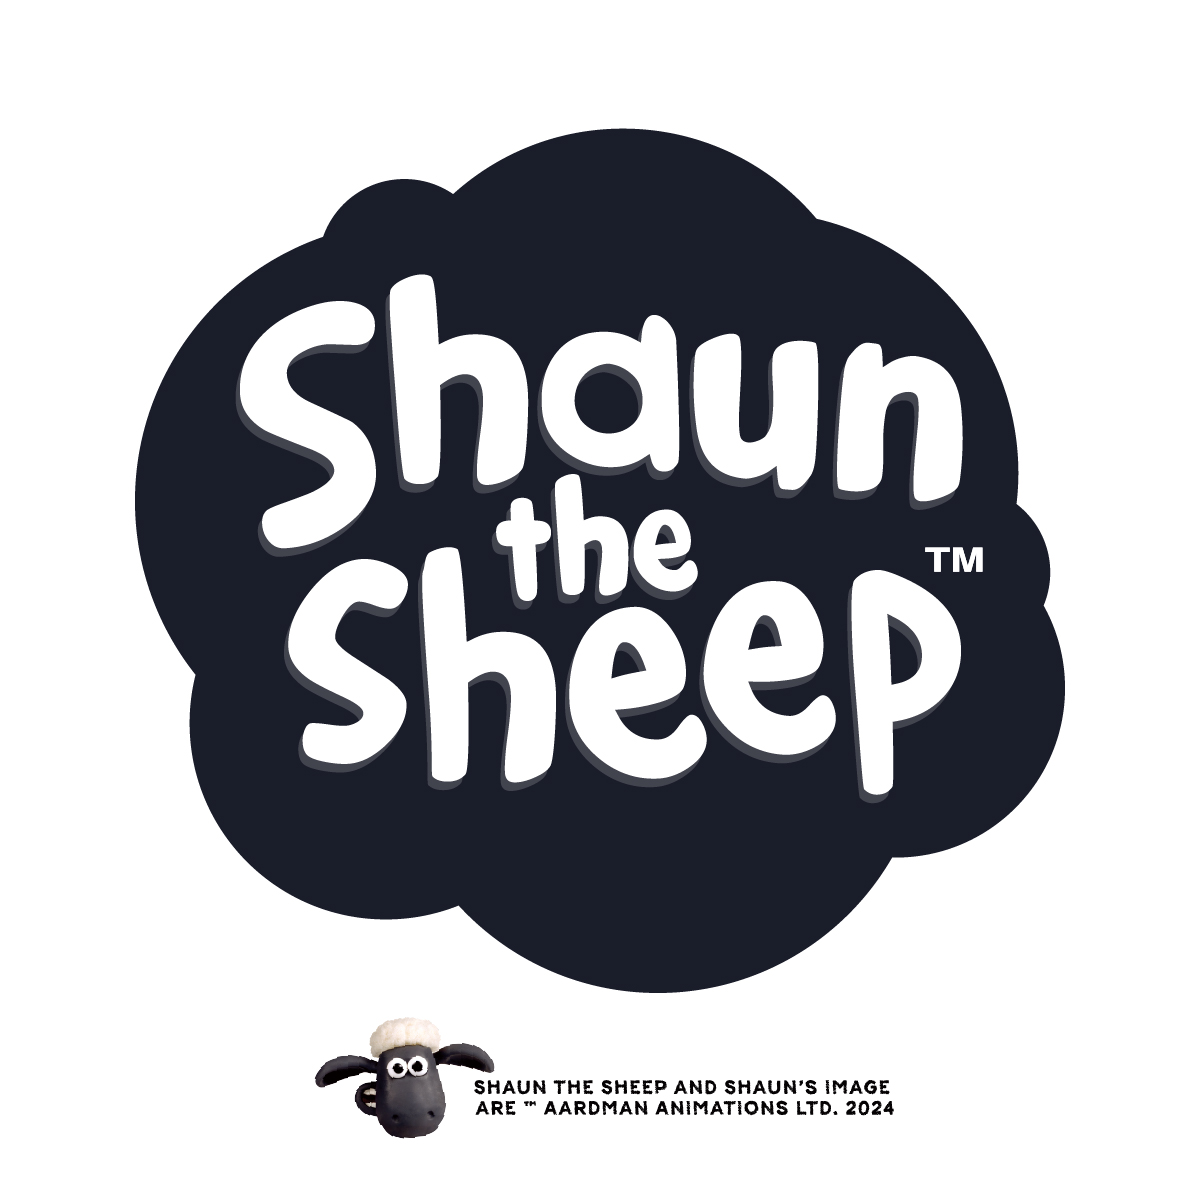 Shaun the sheep／ひつじのショーン